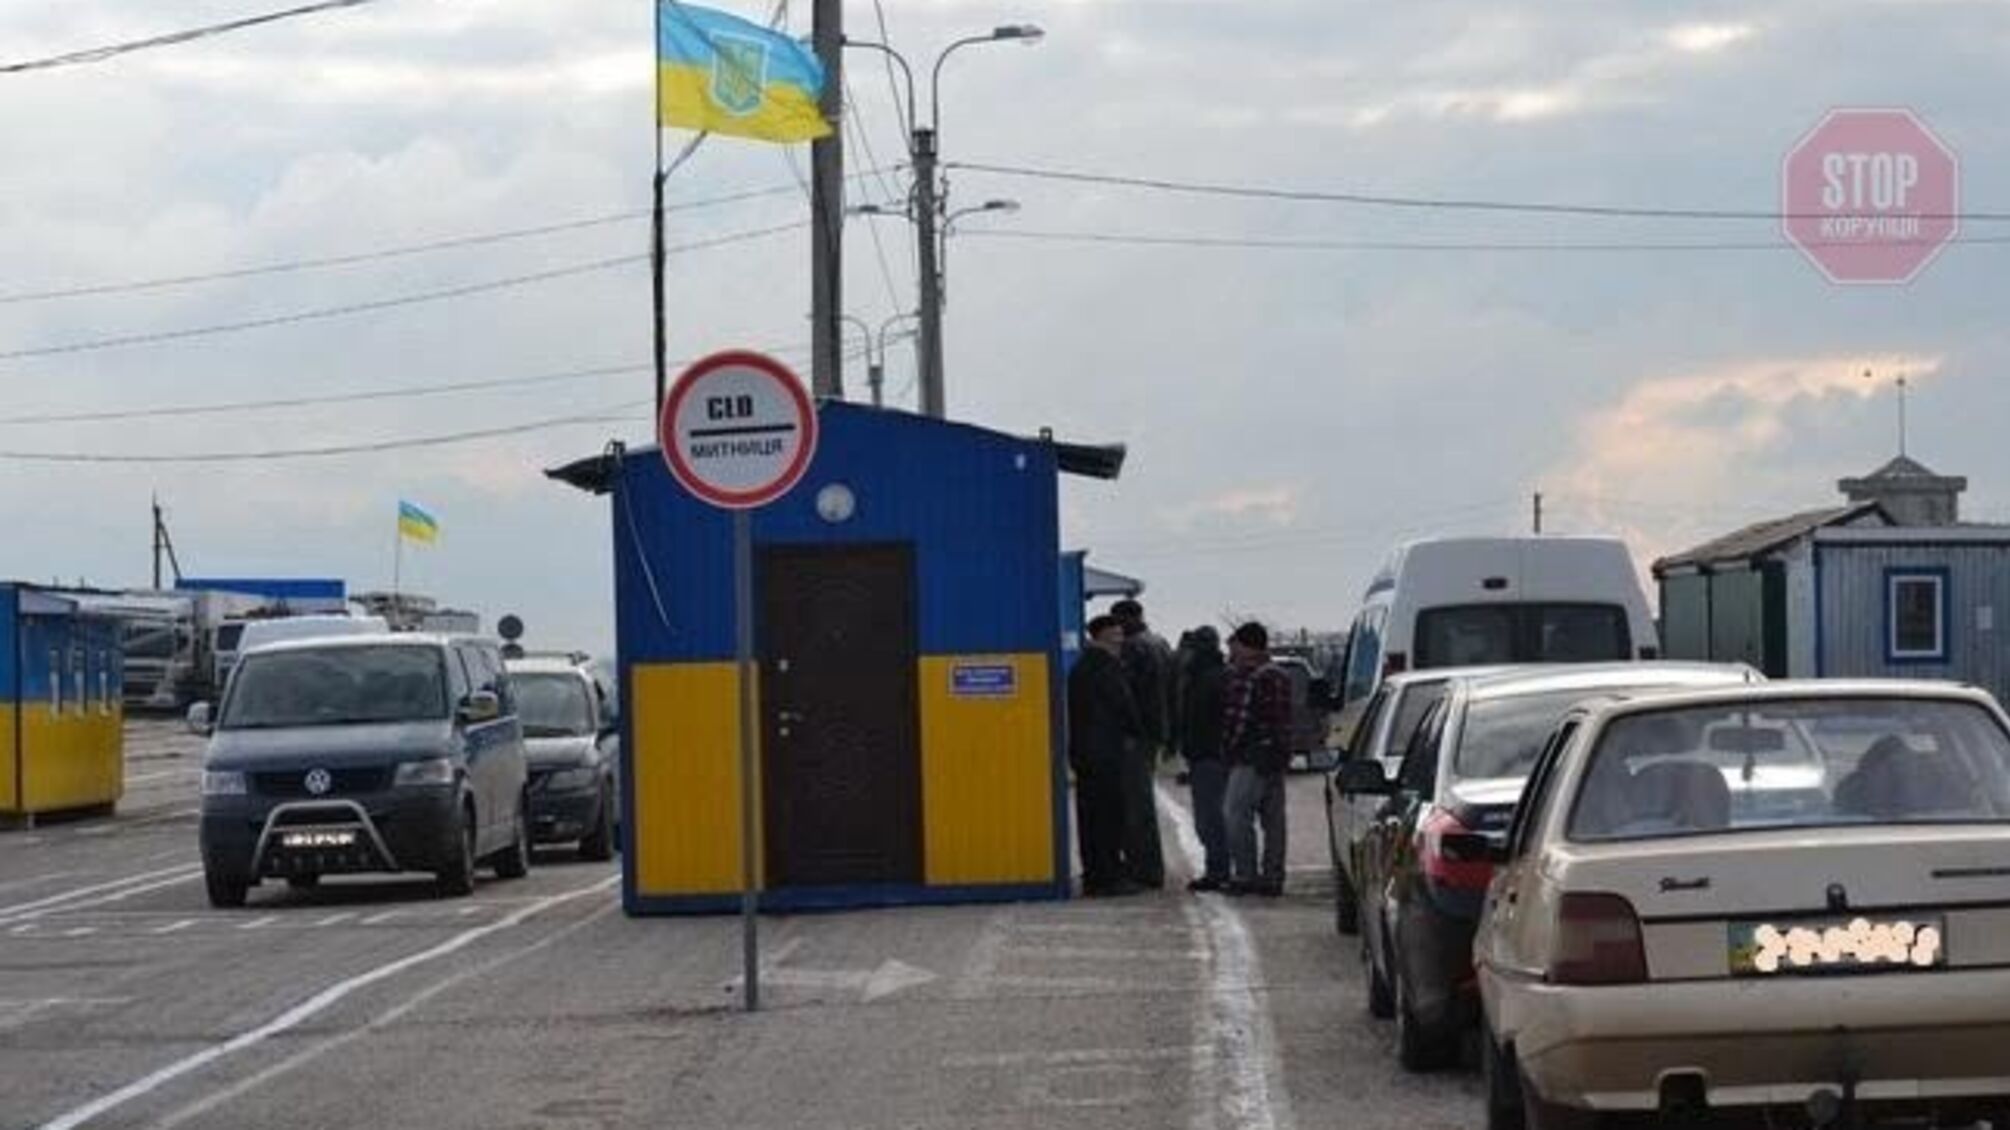 Відкриття КПВВ на Донбасі: як працюватимуть